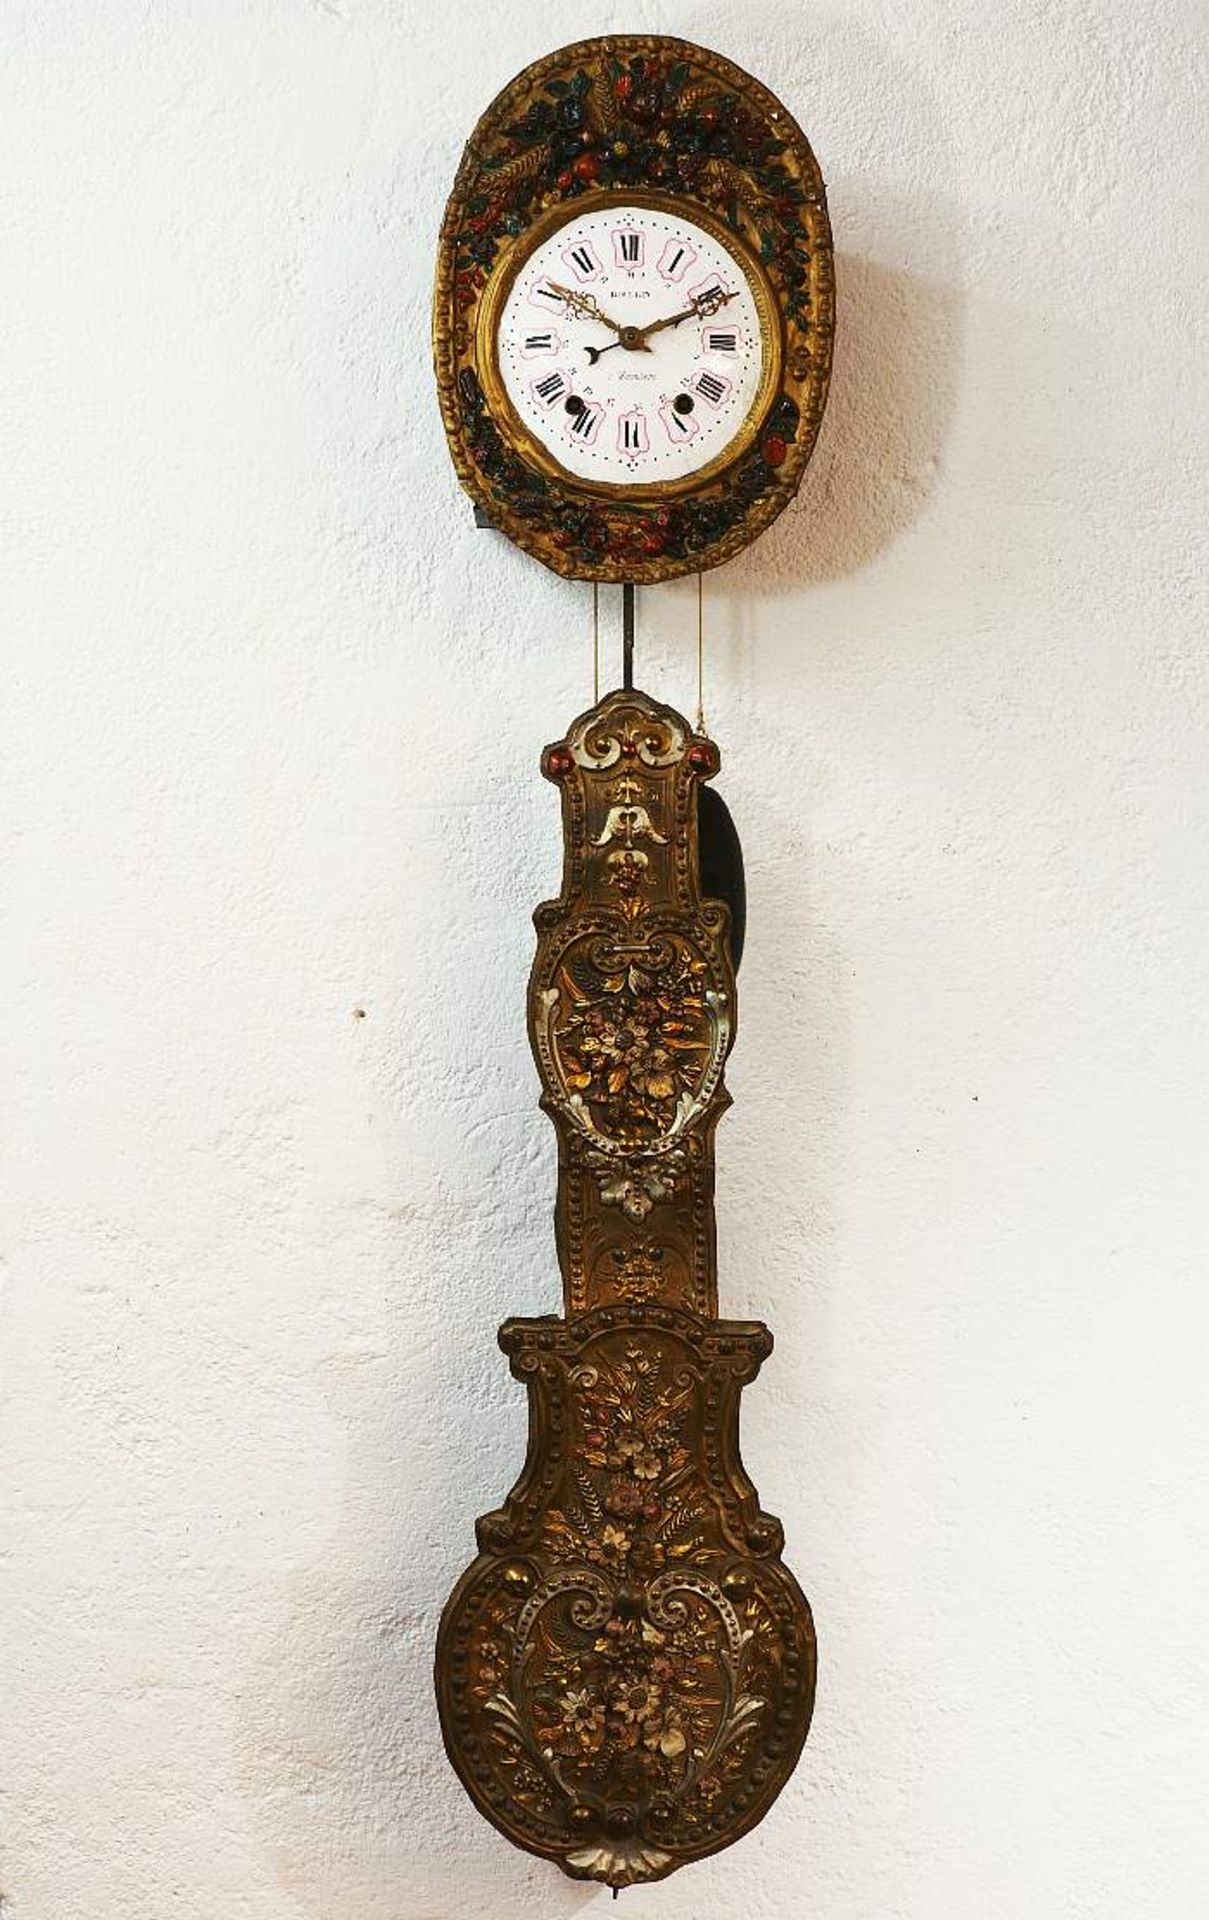 Comtoise-Uhr mit Prunkpendel im floralen Stil. Frankreich. Wohl Mitte 19. Jahrhundert. Weißes